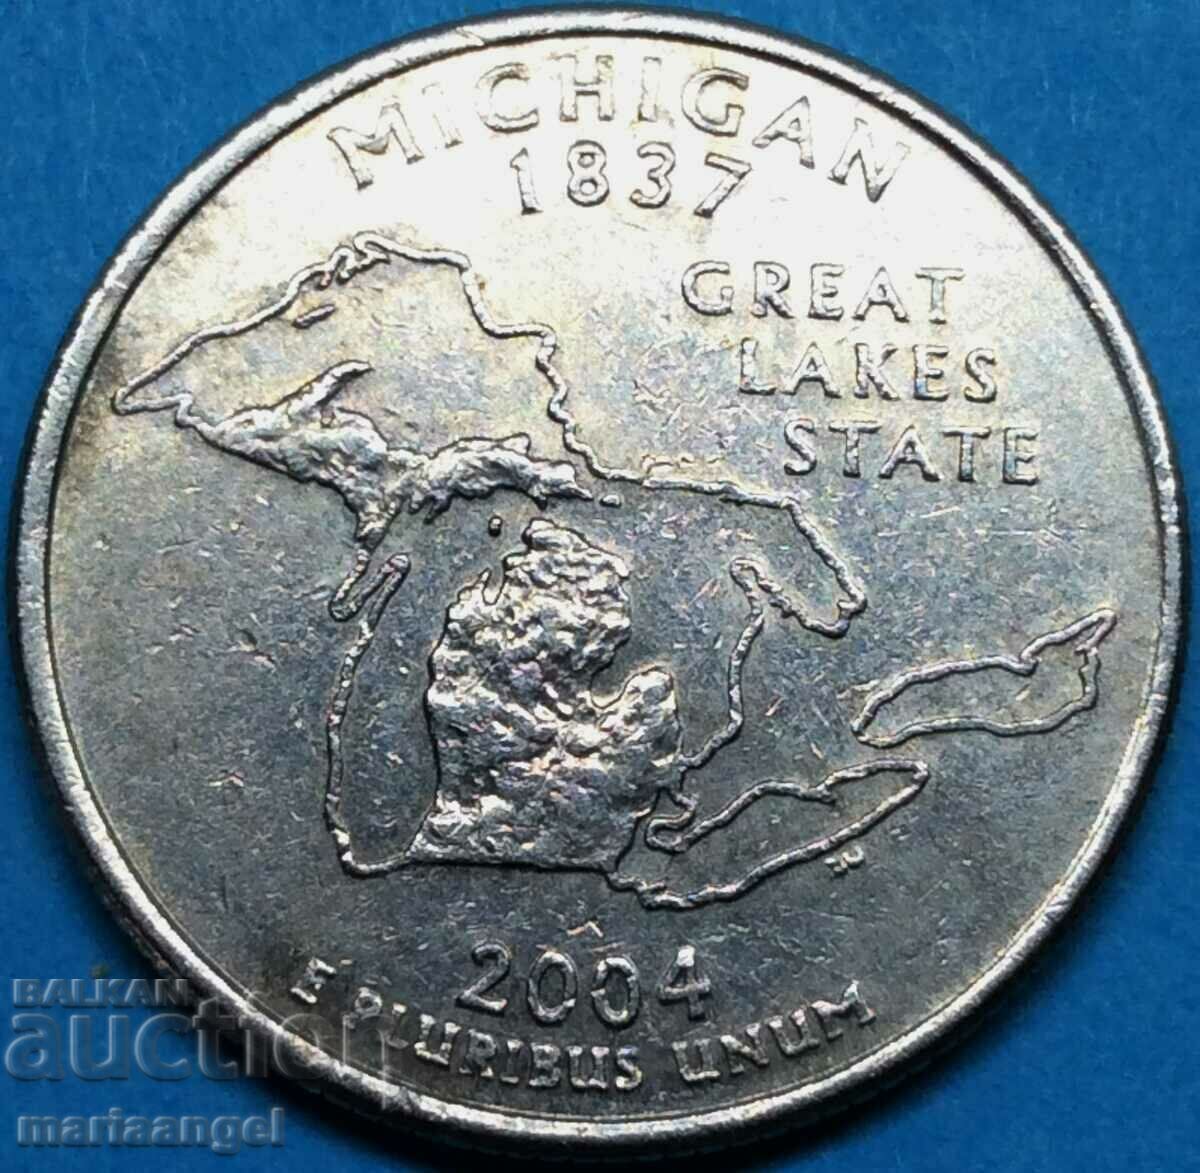 SUA 1/4 dolar 25 cenți trimestru 2004 statul Michigan